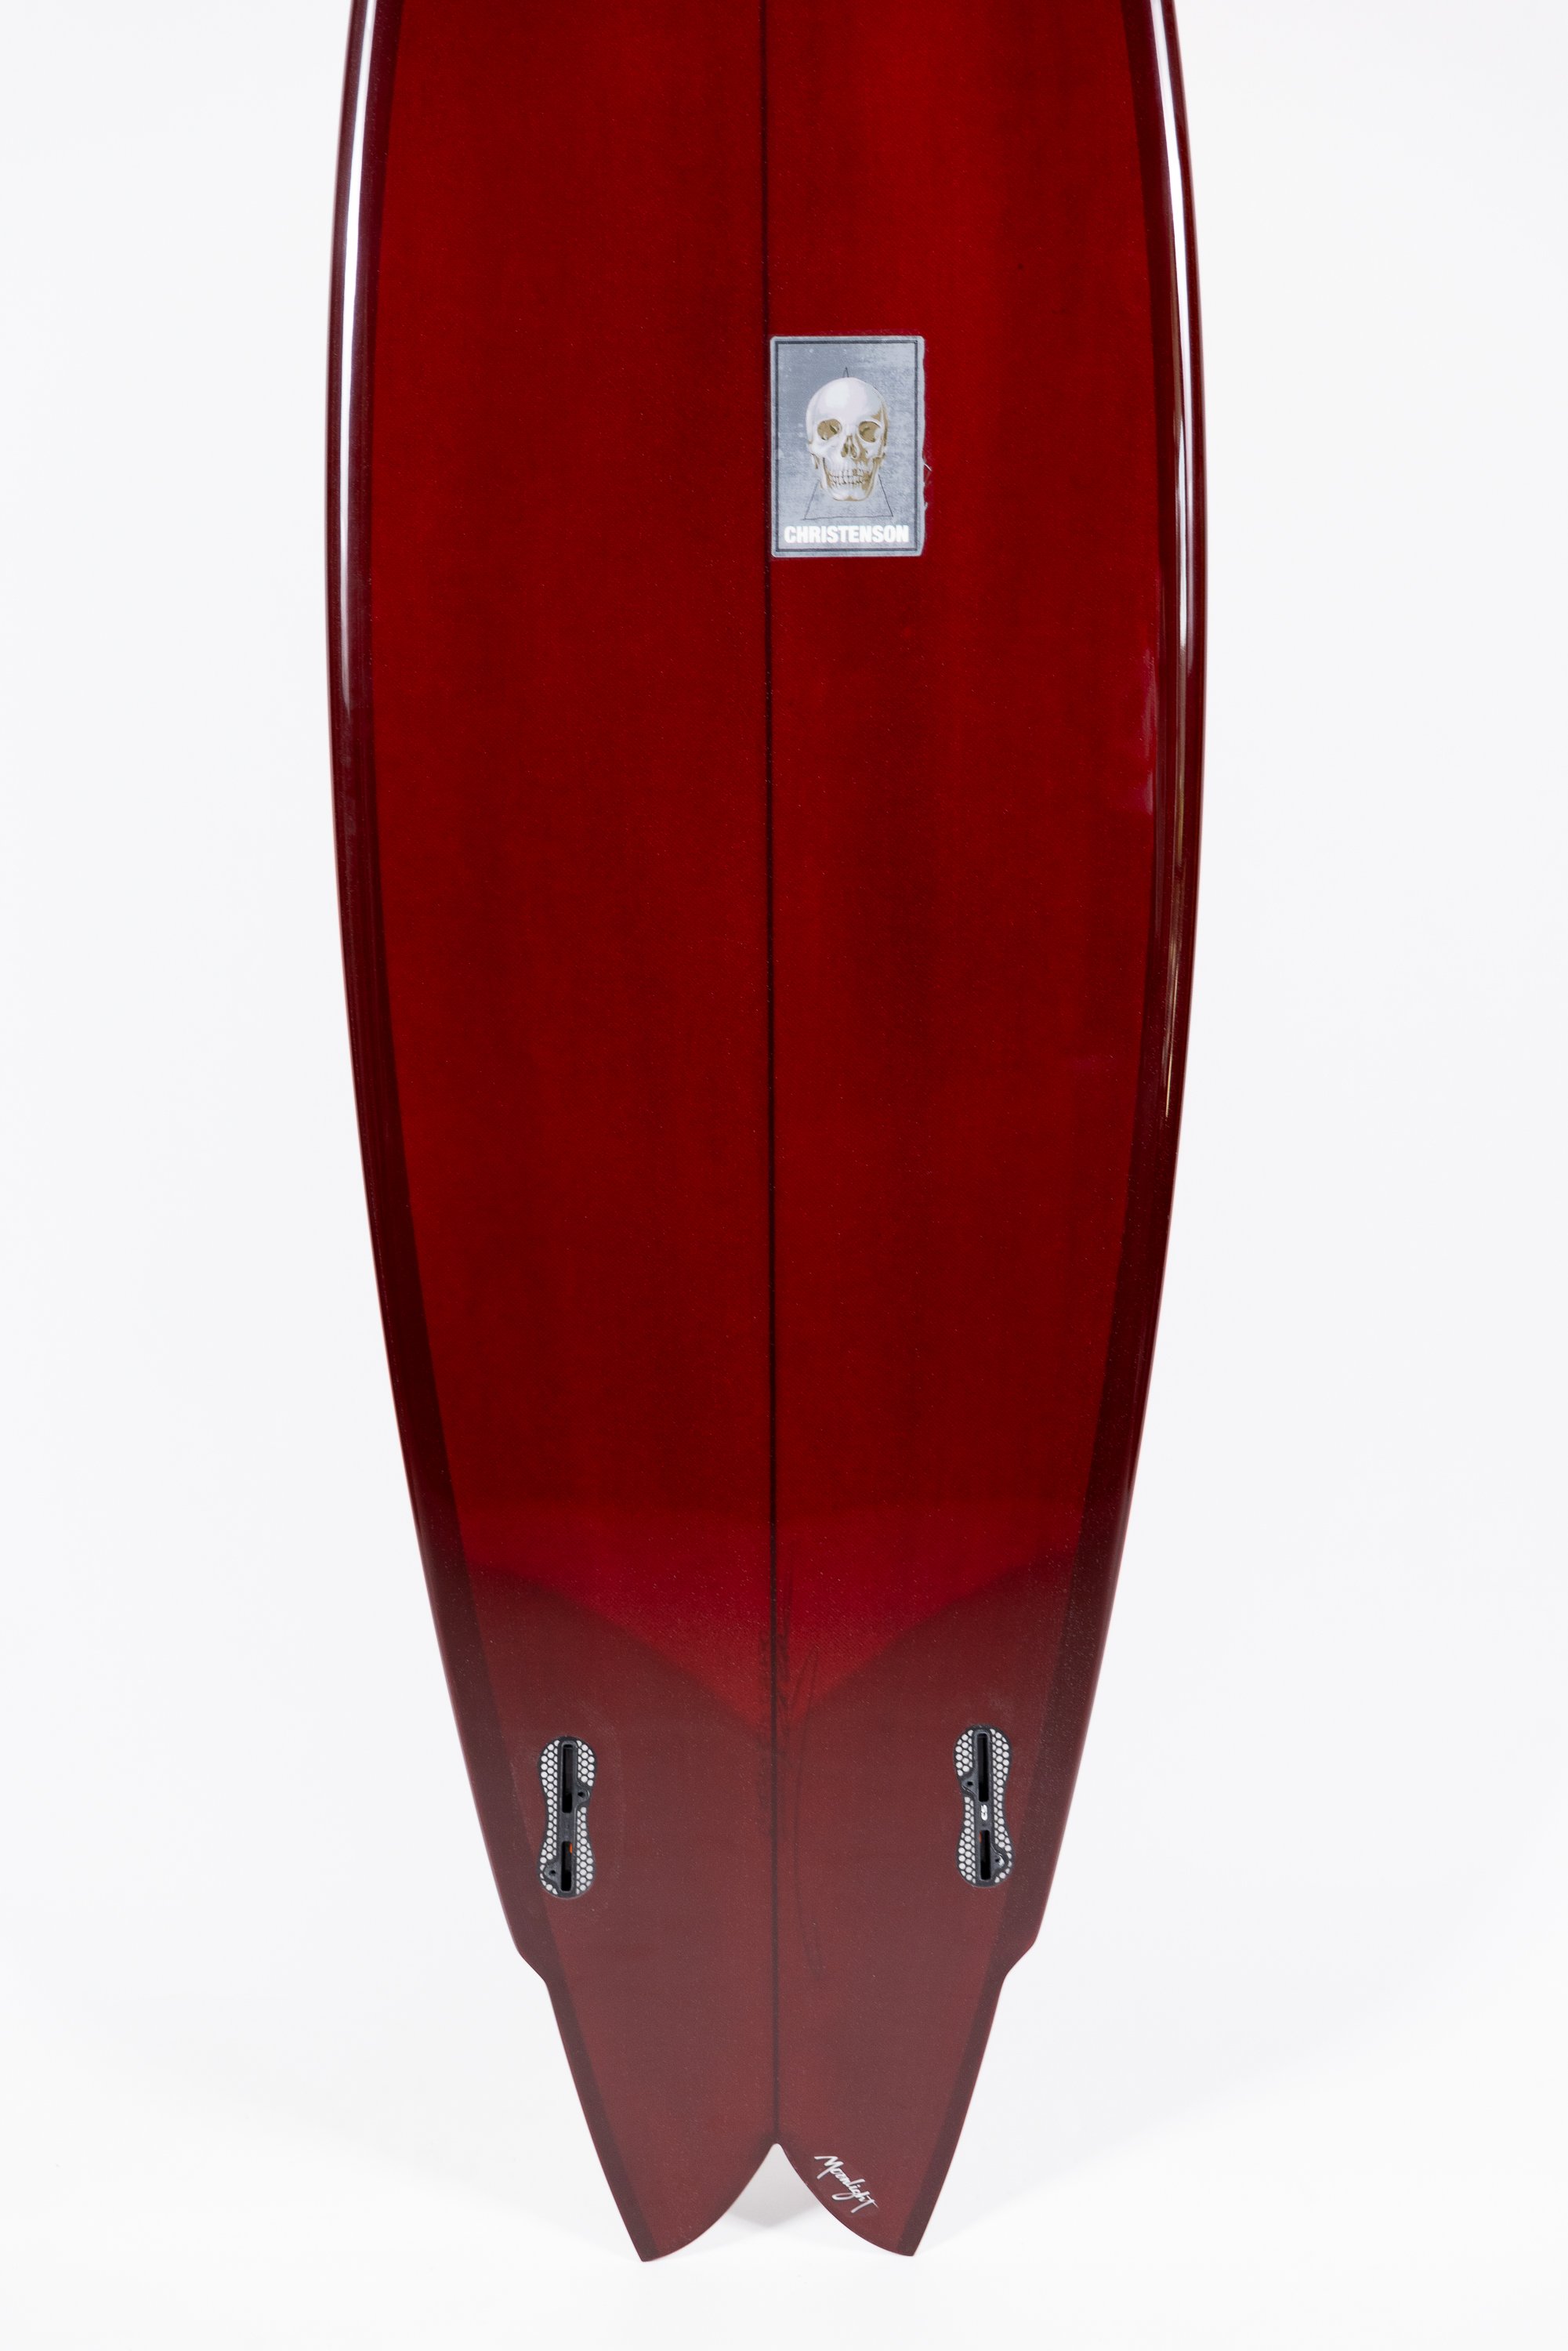 2023-Christenson Surfboards-101.jpg